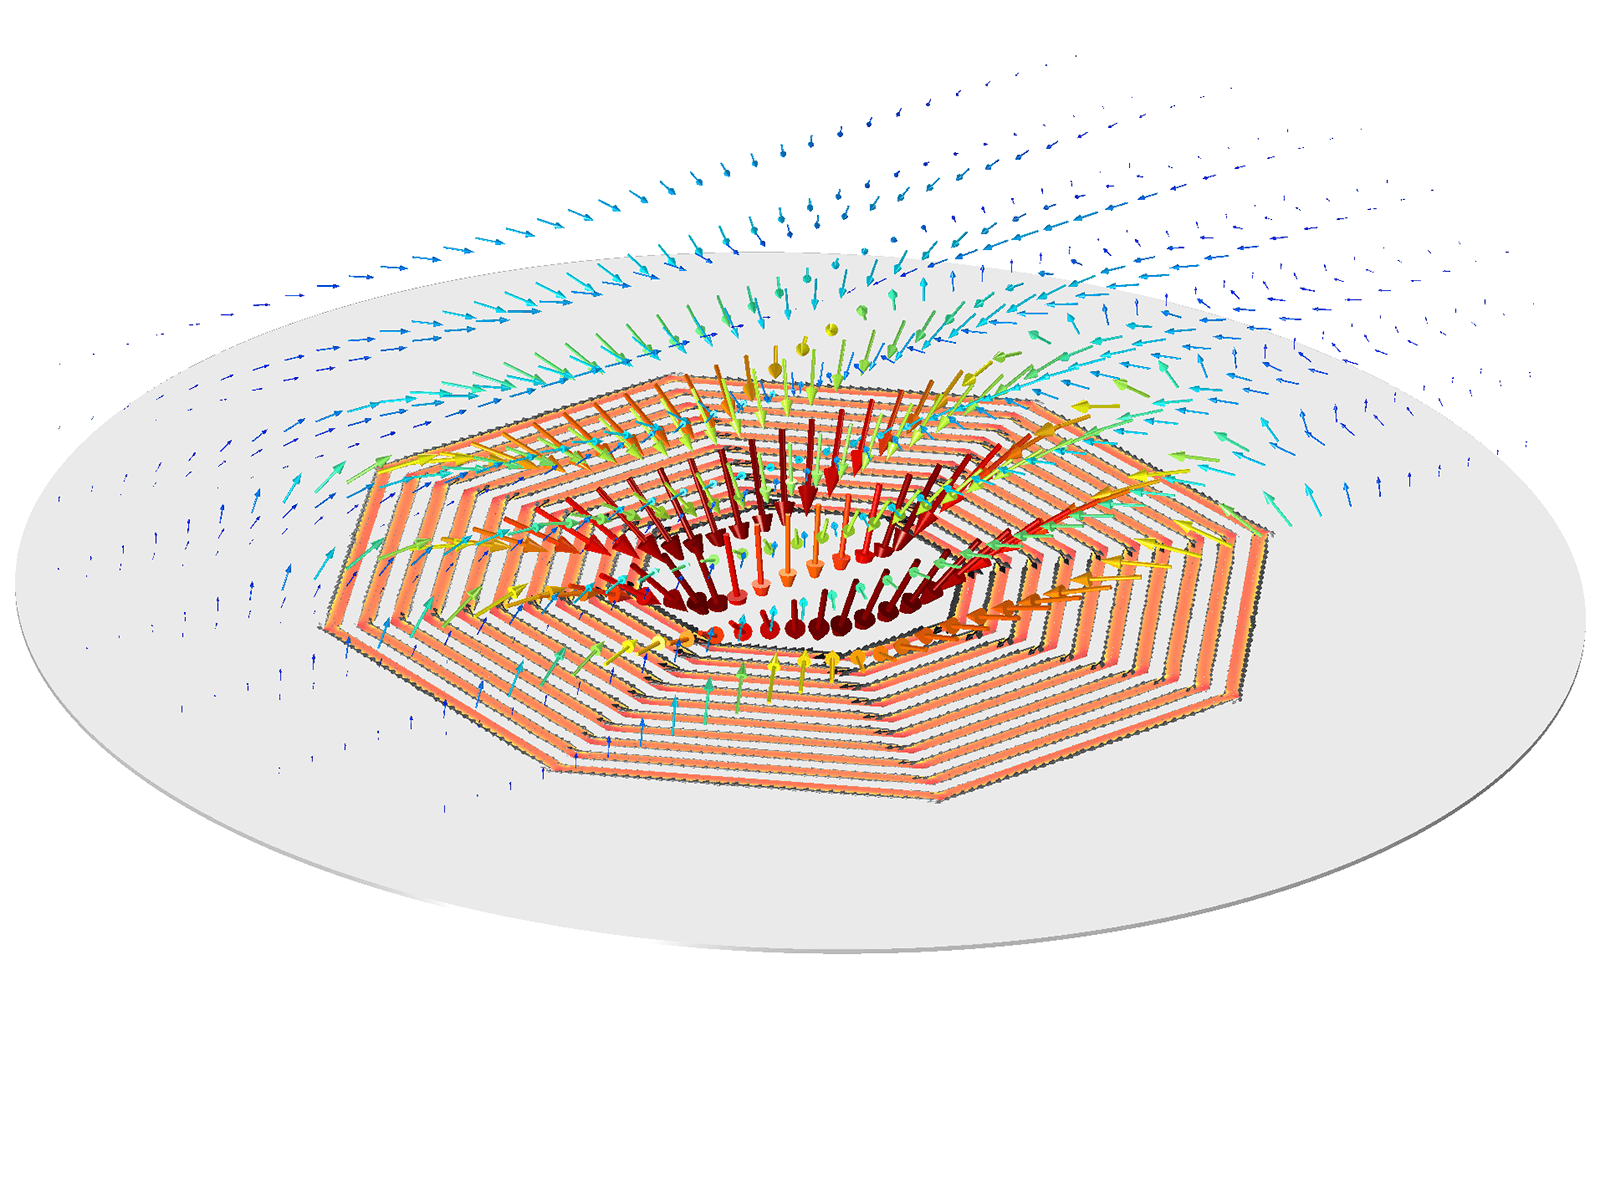 La densidad de flujo magnético sobre la distribución del módulo de la densidad de corriente superficial de la bobina.